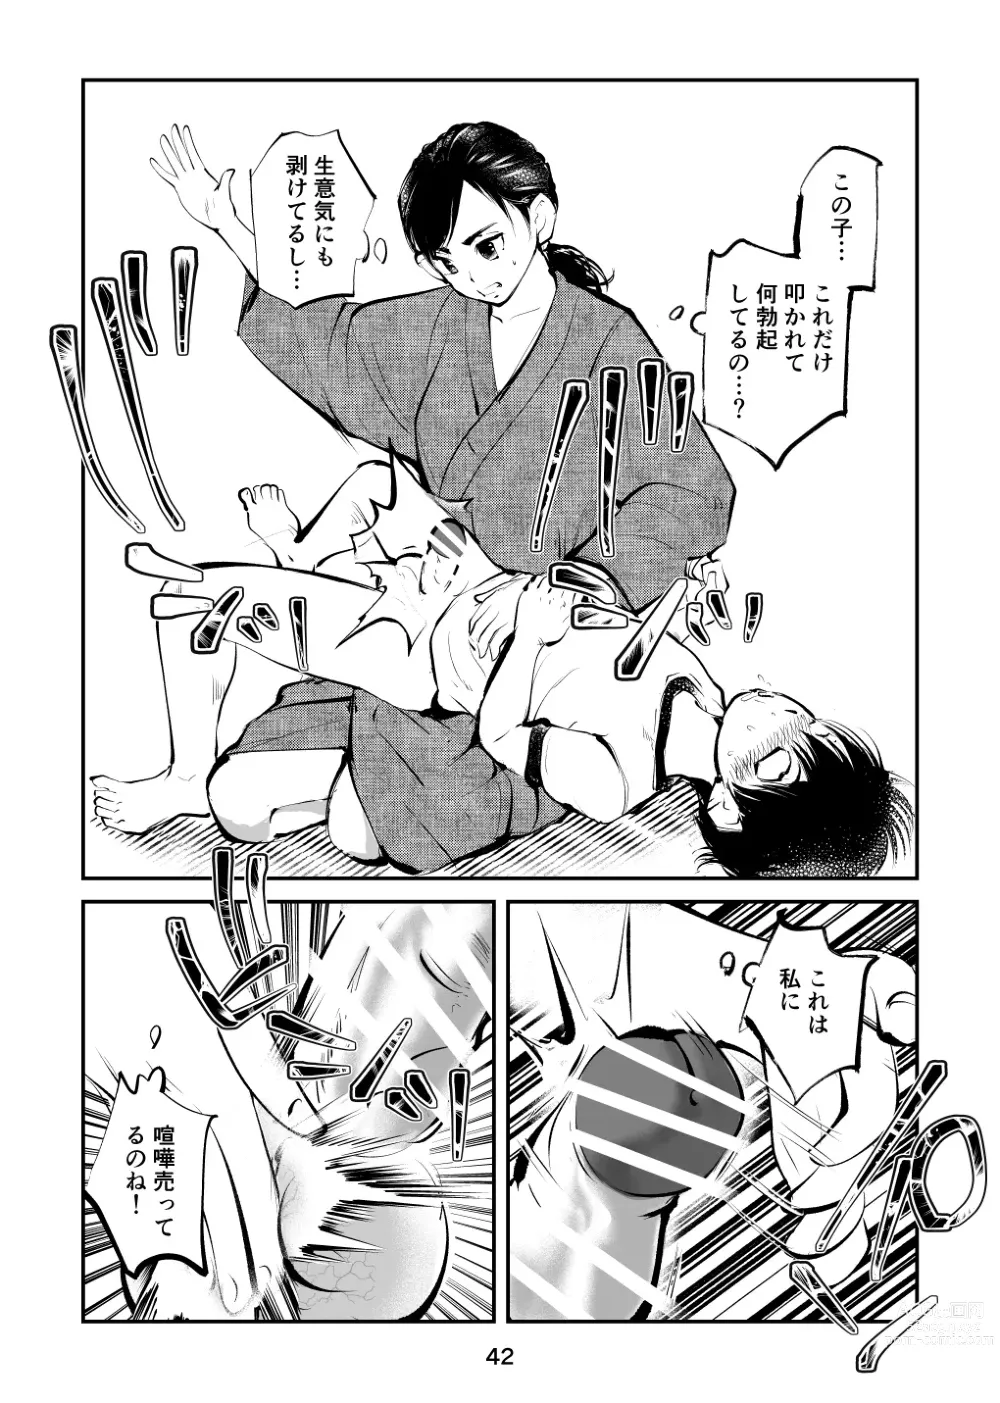 Page 42 of doujinshi Chinpo Shiikukakari 4